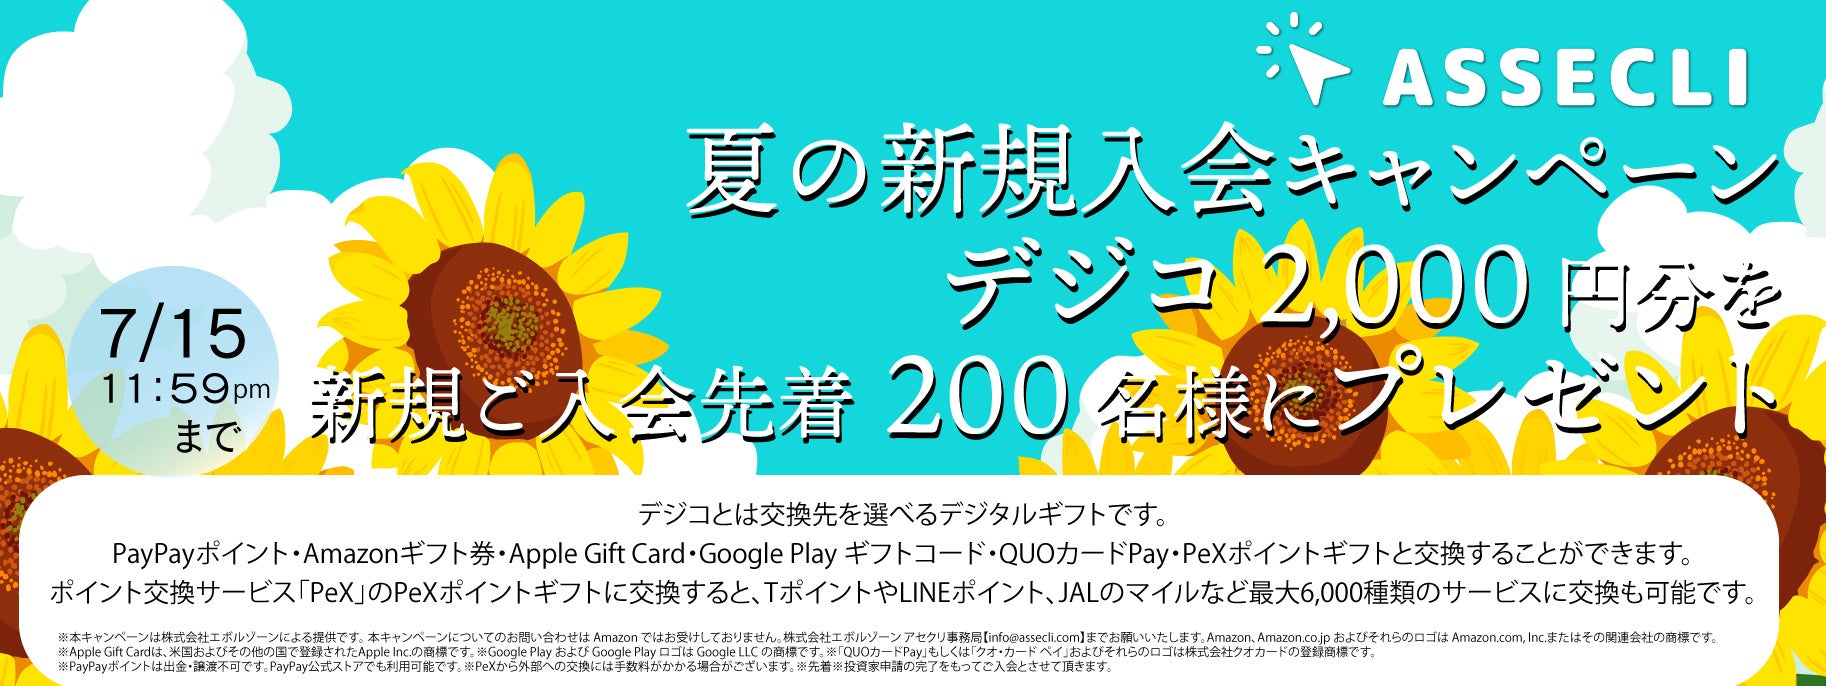 不動産クラウドファンディングの「ASSECLI」が新規公開、「東京都西東京市#22ファンド」の募集を7月1日より開始します。のサブ画像1